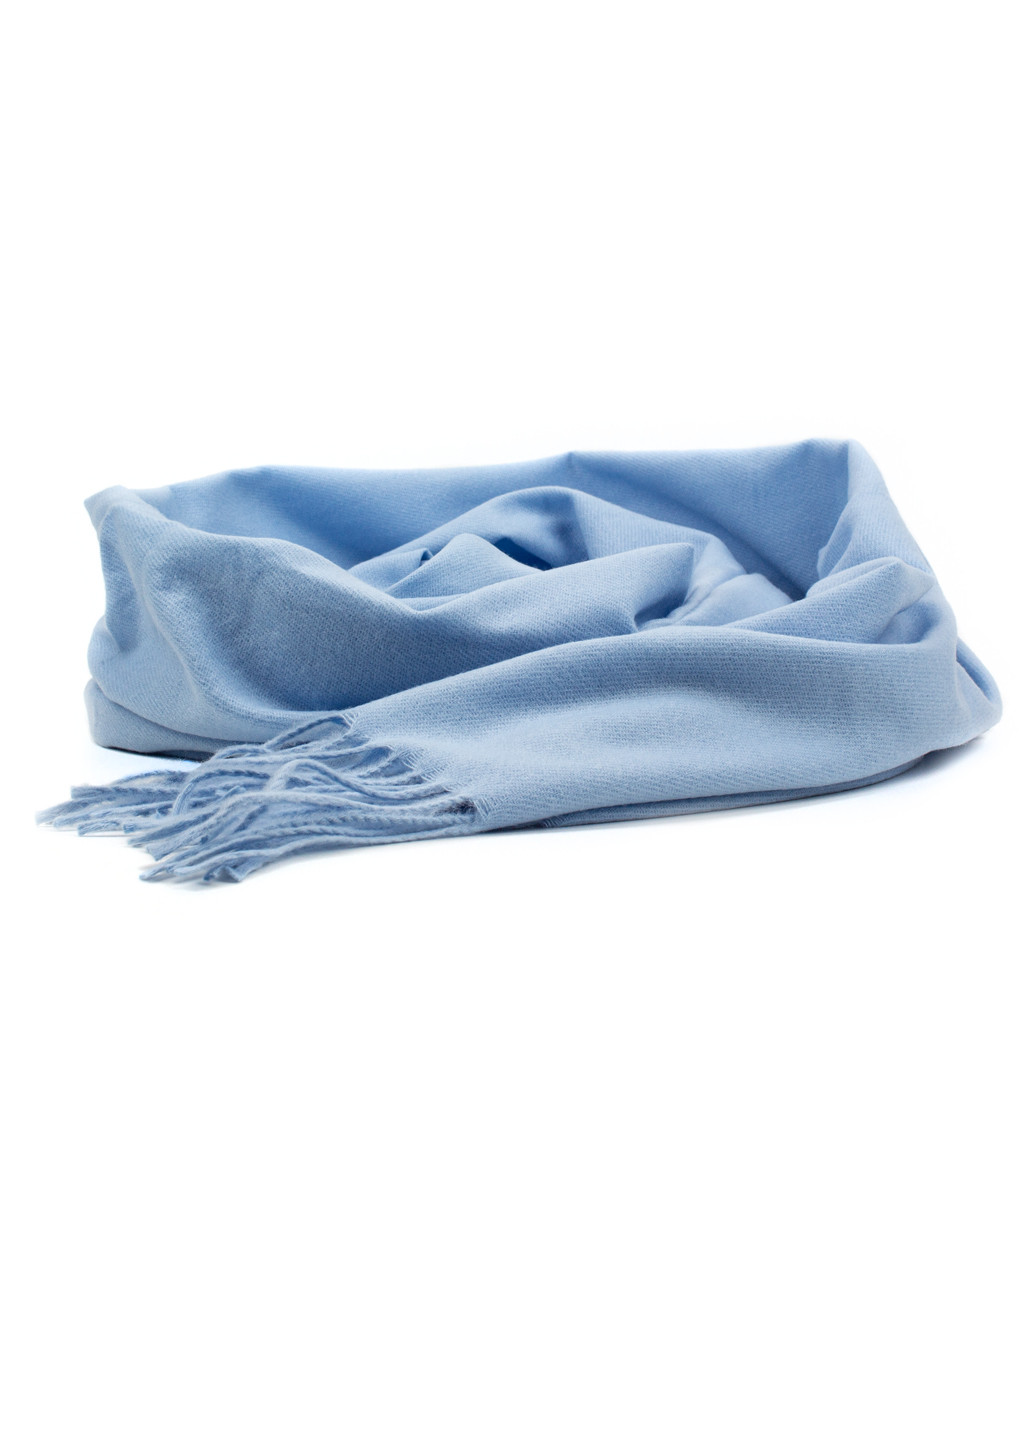 Женский однотонный шарф с бахромой, голубой Corze gs-1014 (269449231)